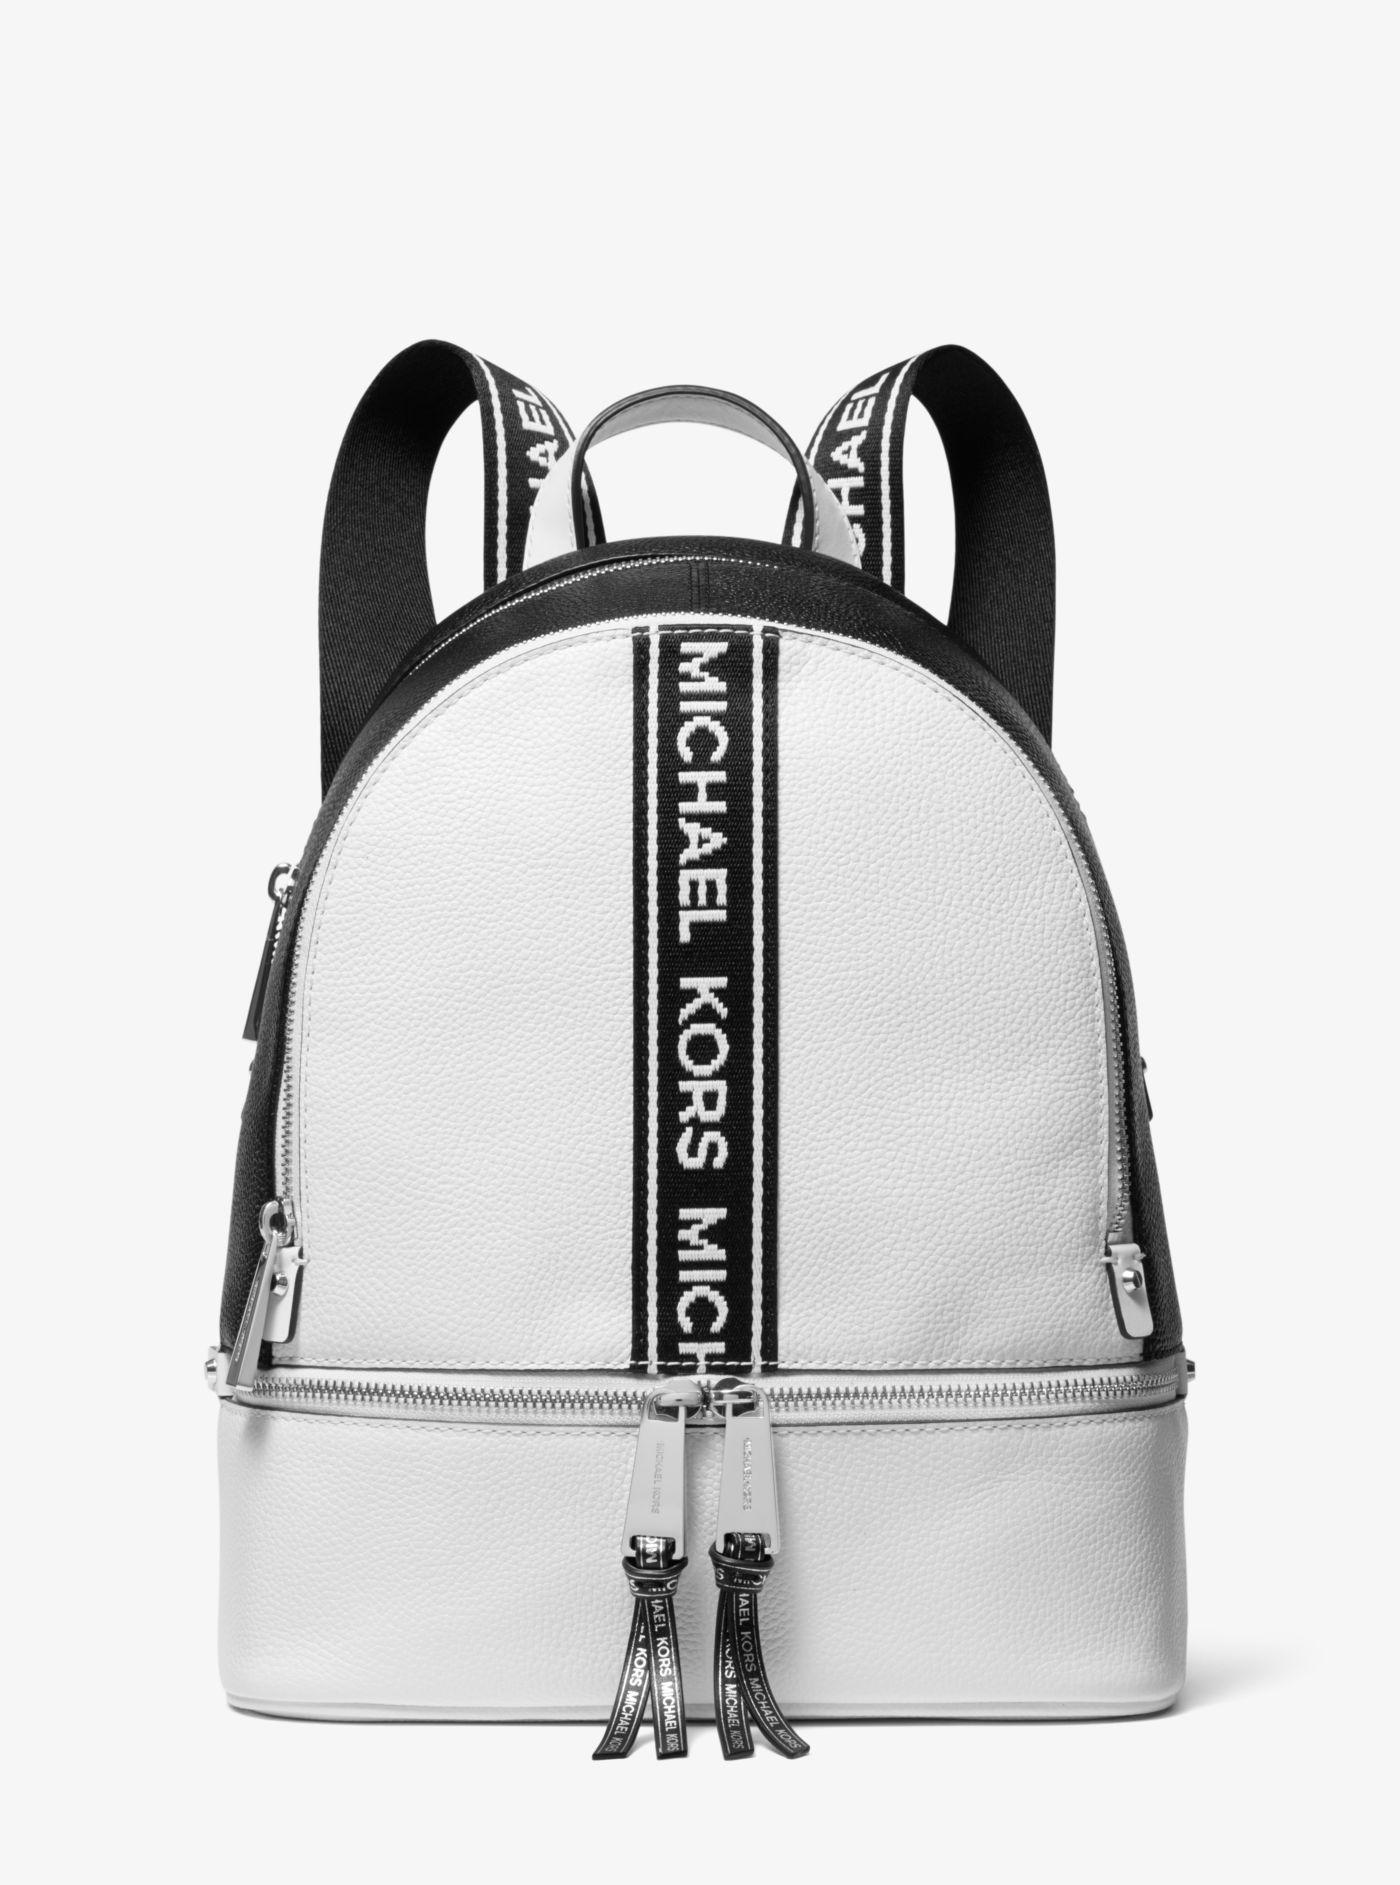 Michael Kors Logo Tape Bag Top Sellers, 52% OFF | www 